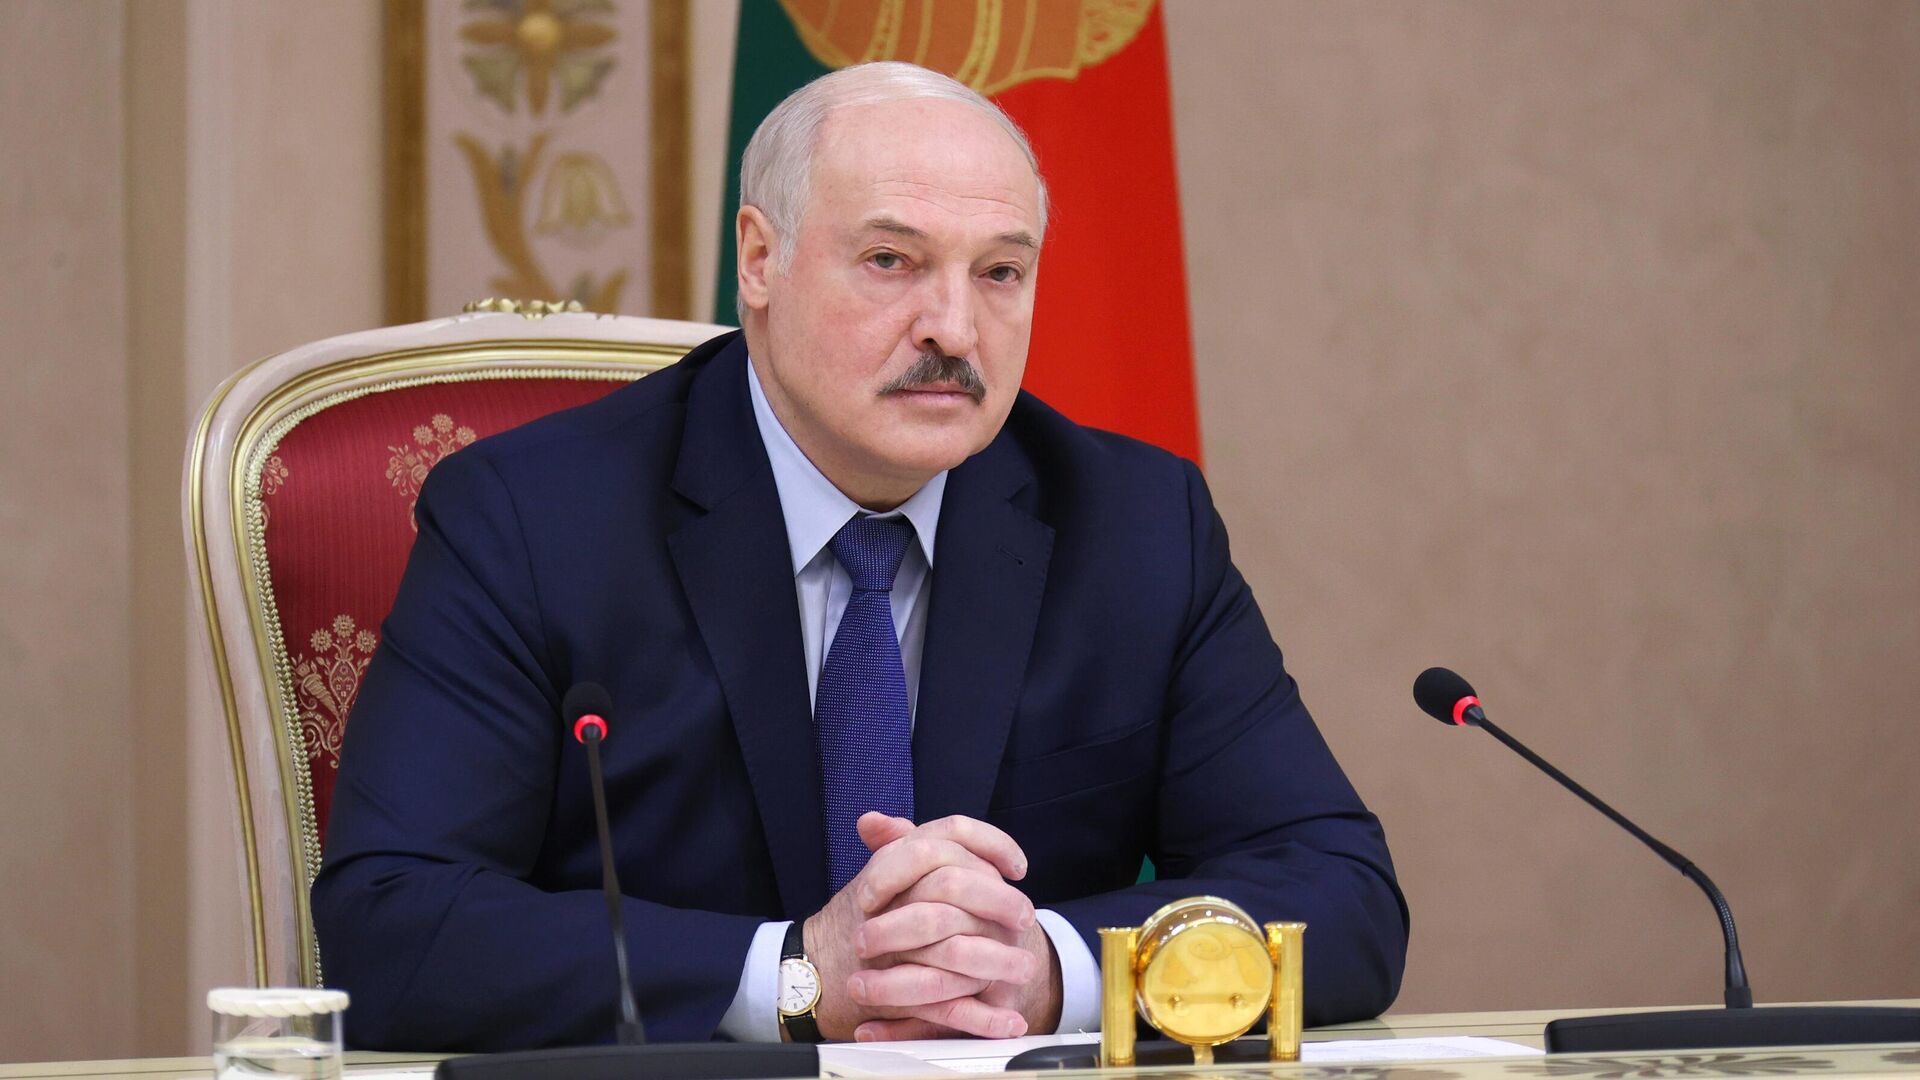 Лукашенко открыто намекнул, что республики бывшего СССР могут войти в Союз Москвы и Минска. Что это означает? - КОММЕНТАРИЙ